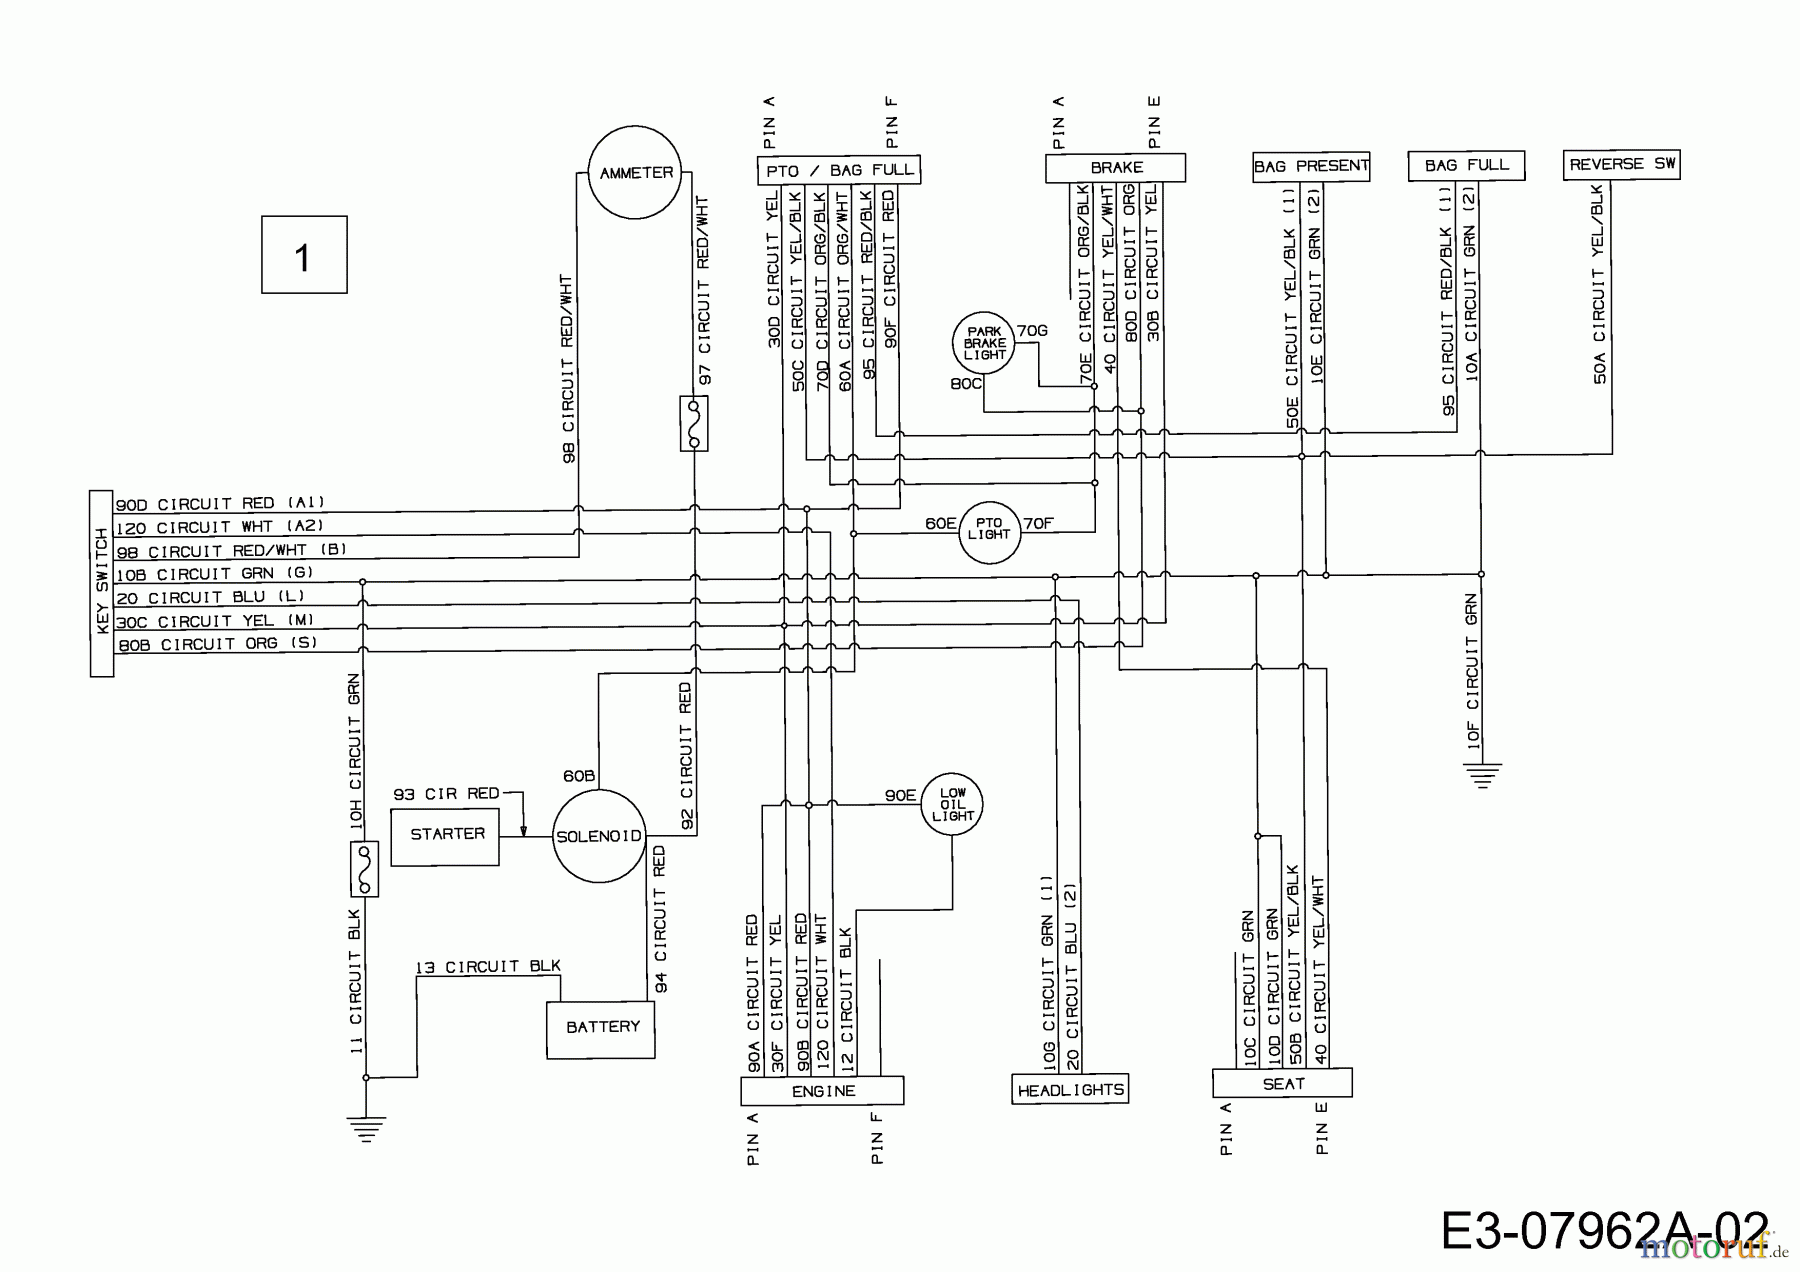  Edt Tracteurs de pelouse EDT 135-92 13AA509E610  (2002) Plan électrique